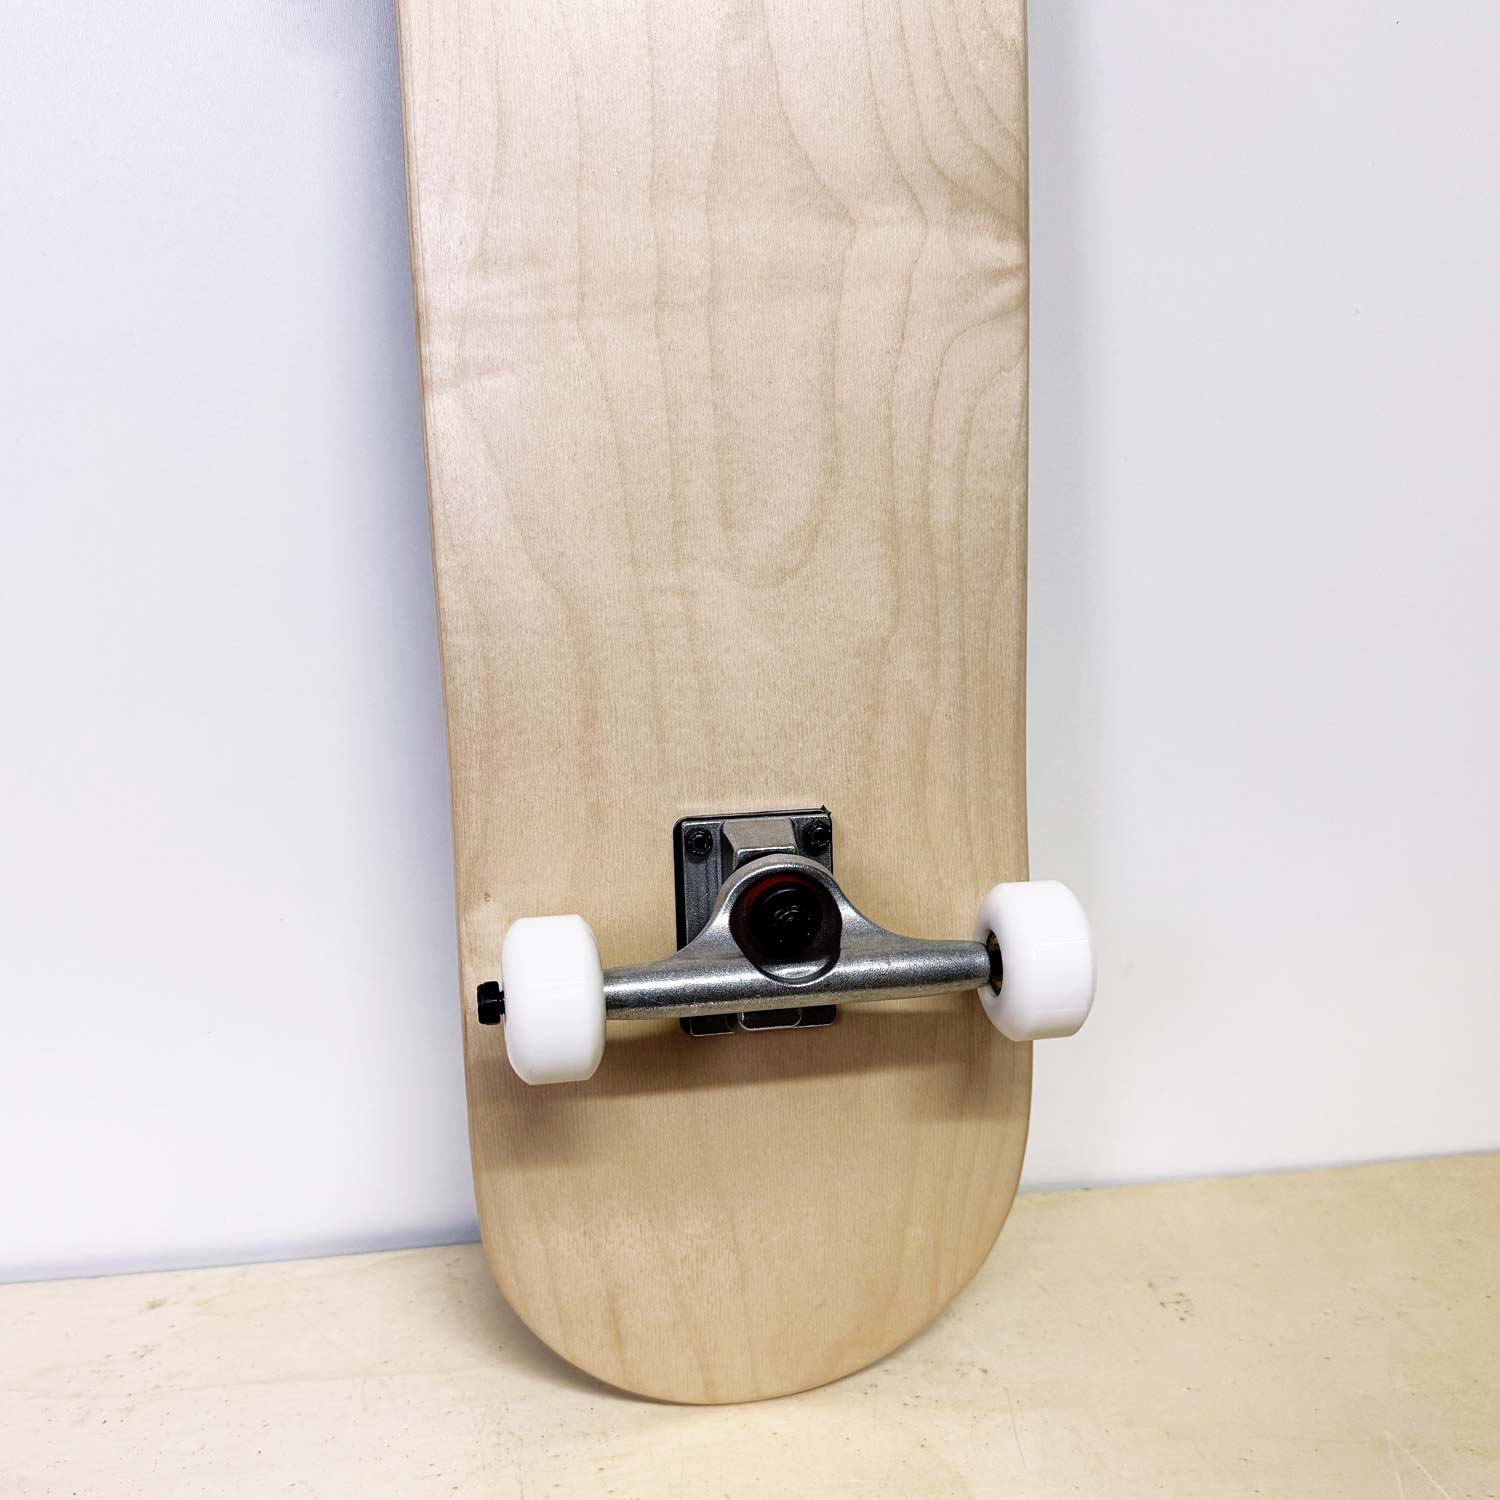 skateboard completo blank liscio senza grafica, solo legno naturale - prodotto da algal board